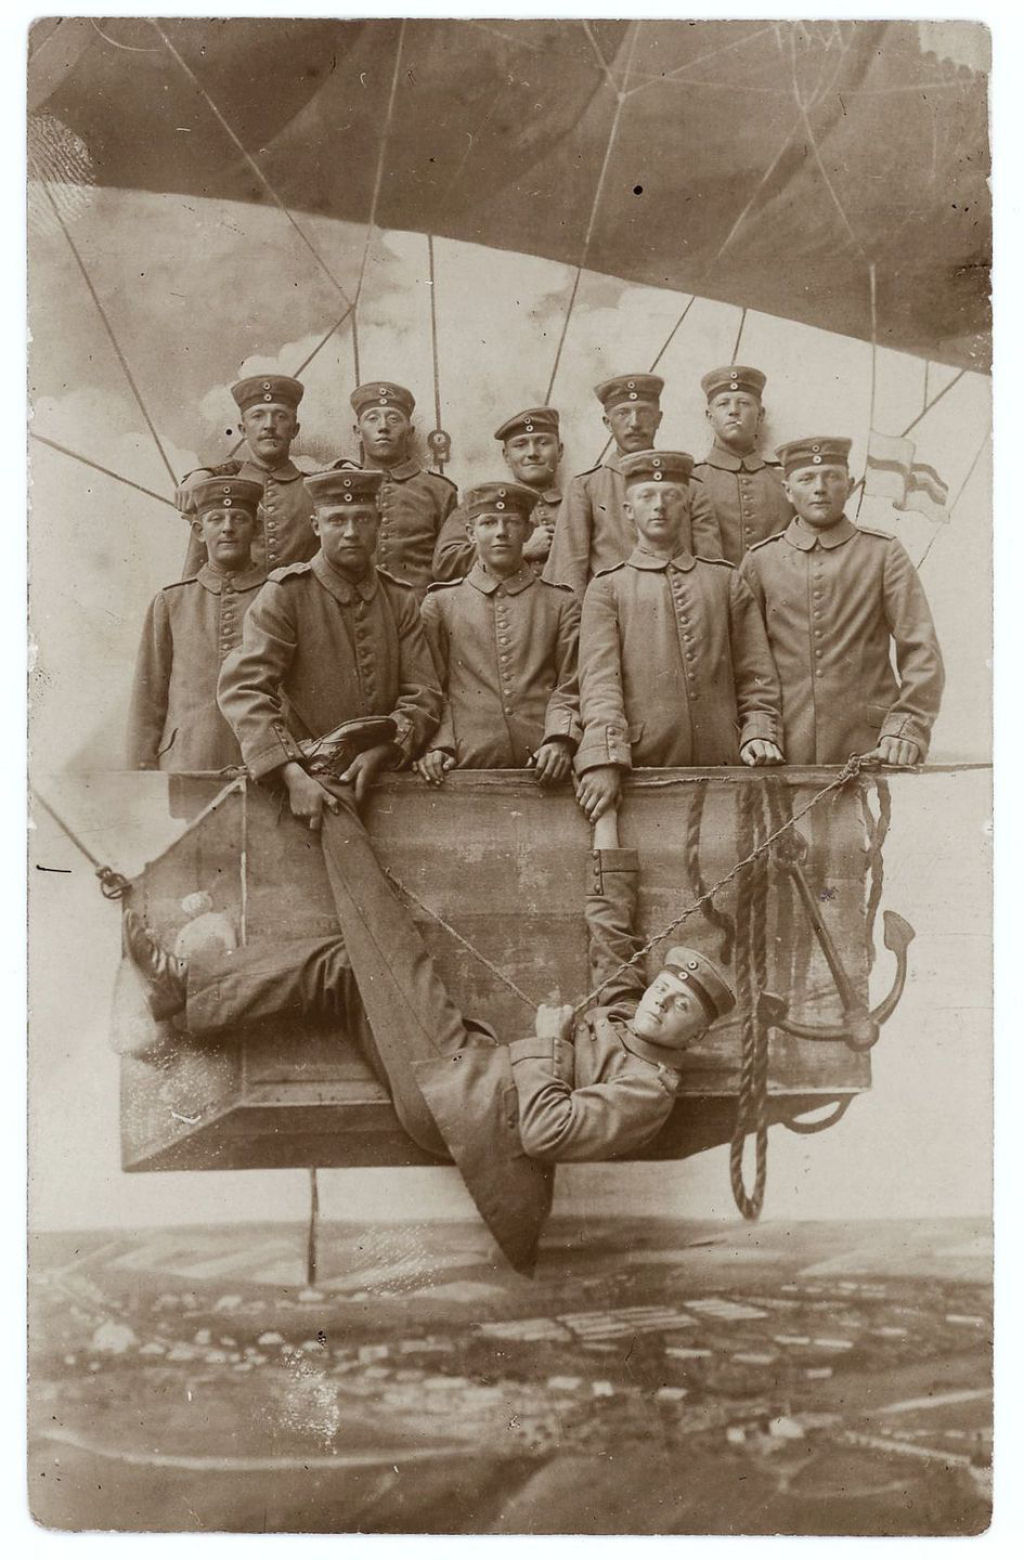 Fotos engraadas mostram soldados da Primeira Guerra Mundial posando com falsos adereos militares 25